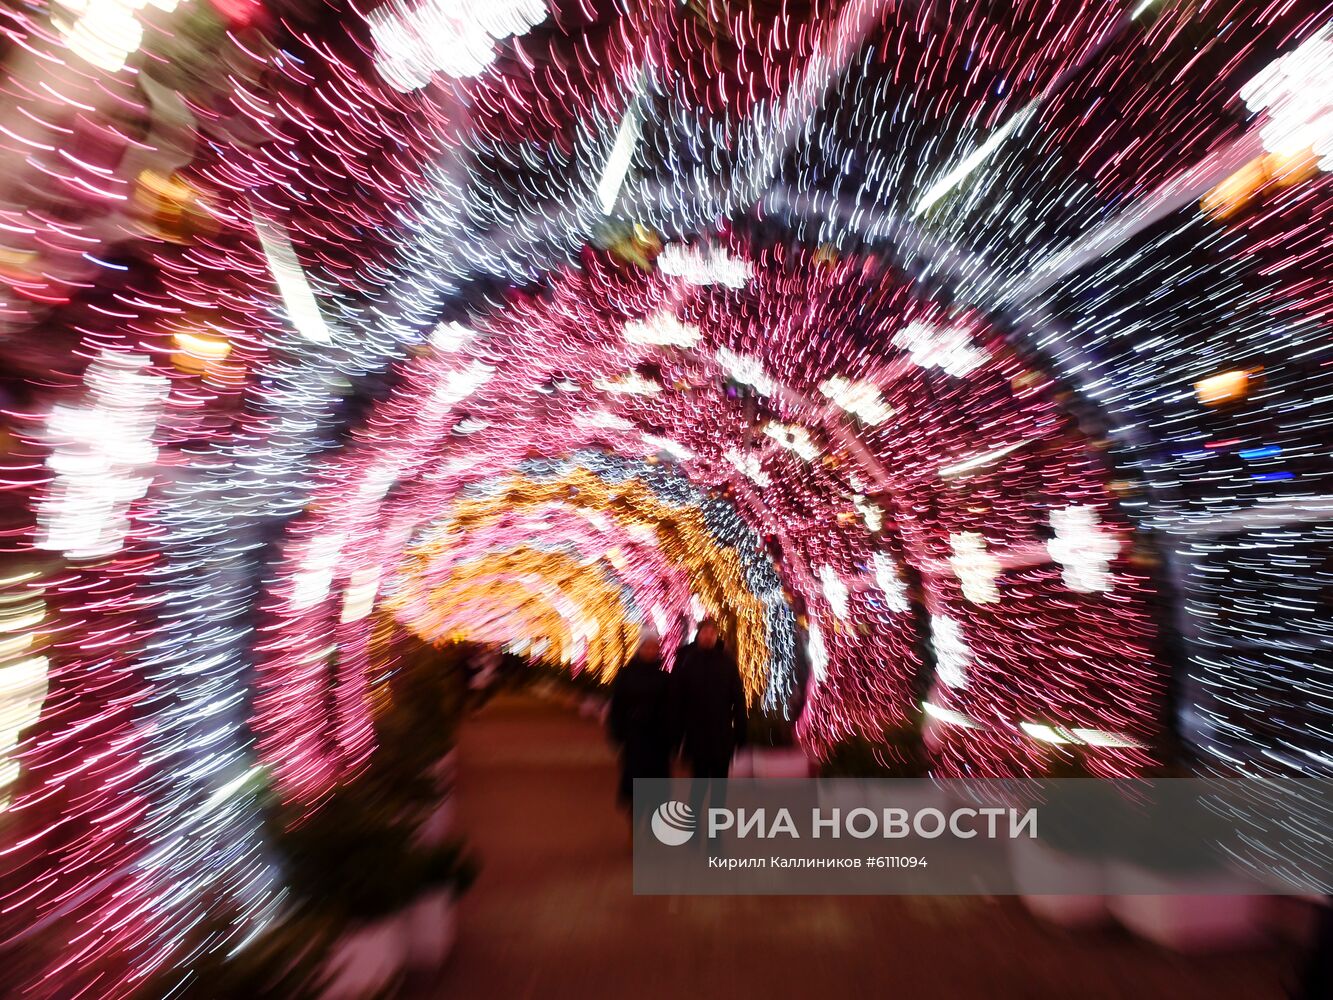 Новогоднее украшение центральных площадей Москвы